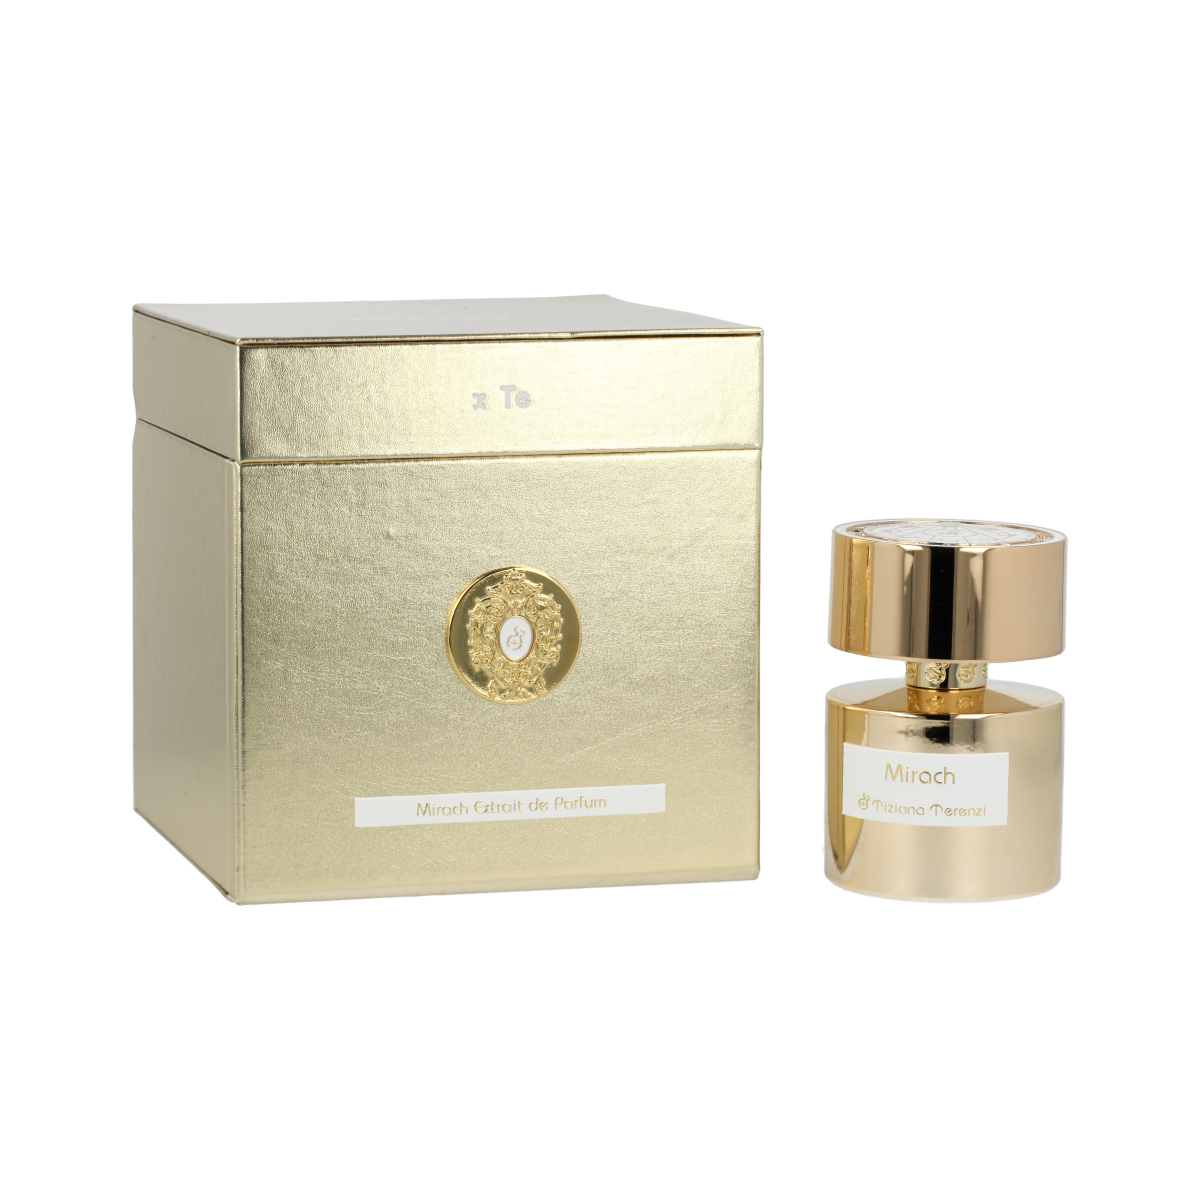 Tiziana Terenzi Mirach 20 ml NIŠINIAI kvepalų mėginukas (atomaizeris) Unisex Parfum